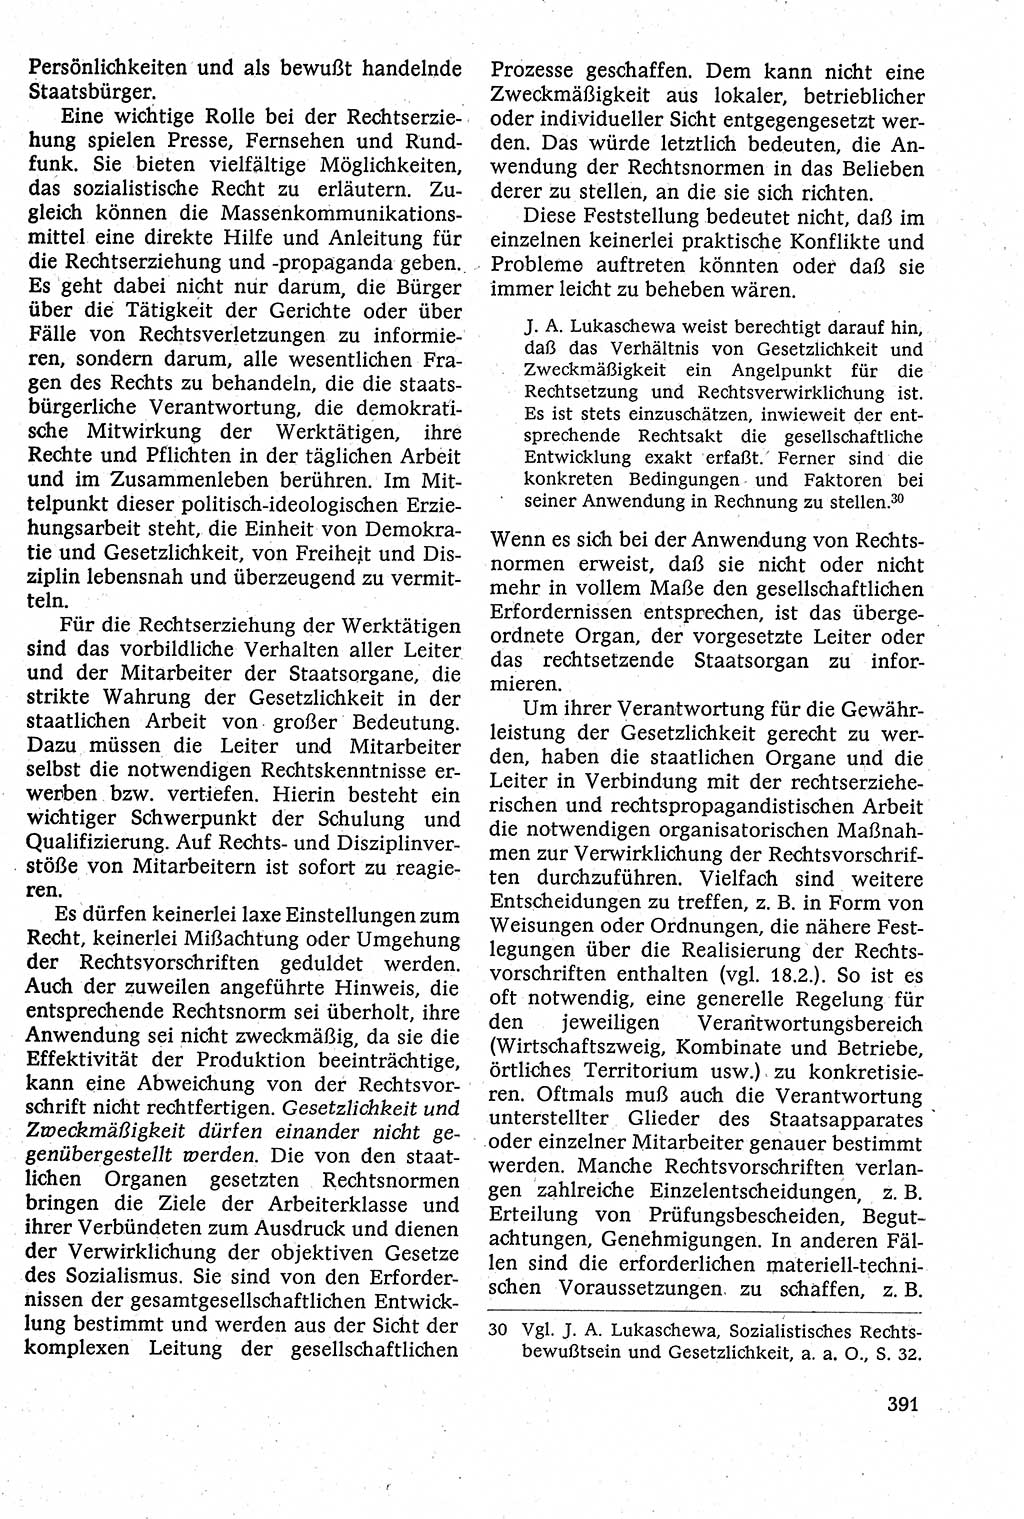 Staatsrecht der DDR [Deutsche Demokratische Republik (DDR)], Lehrbuch 1984, Seite 391 (St.-R. DDR Lb. 1984, S. 391)